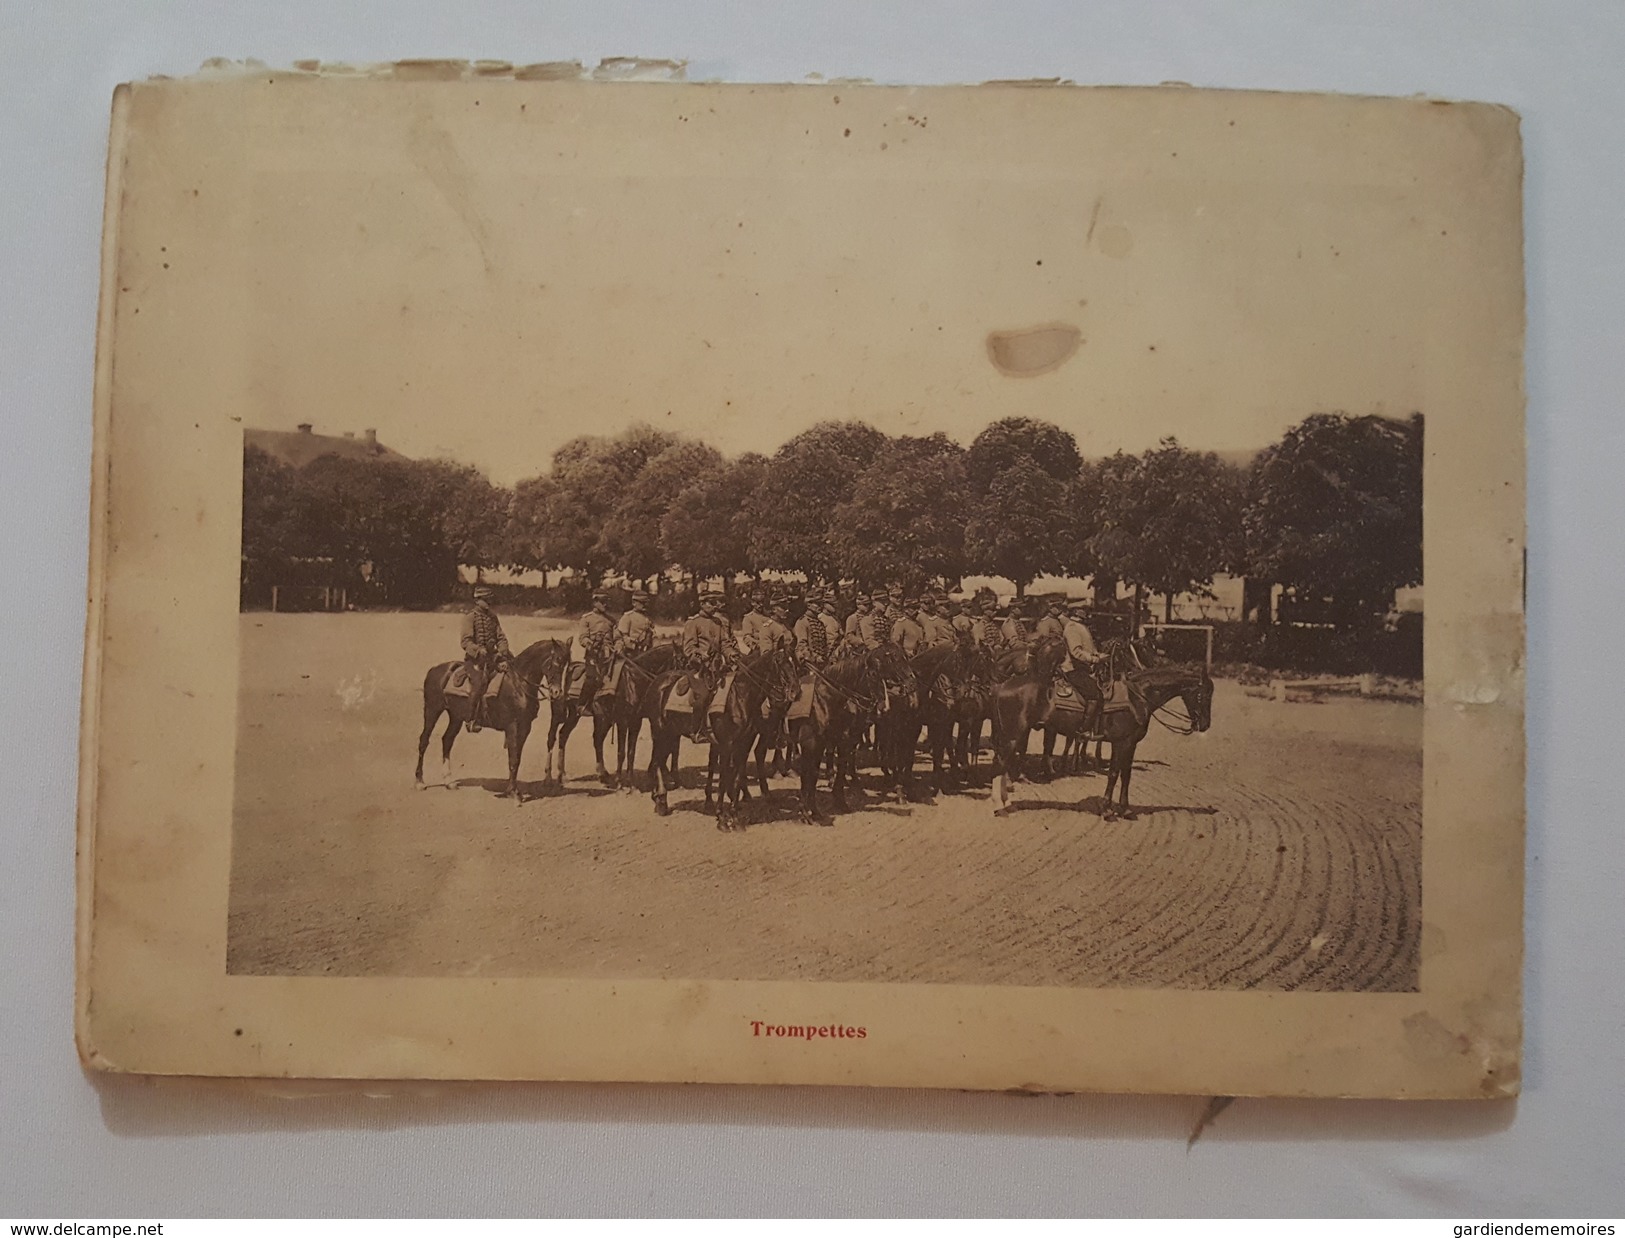 15è Régiment de Chasseurs de chalons sur Marne - 1909 - Livret de 24 photos